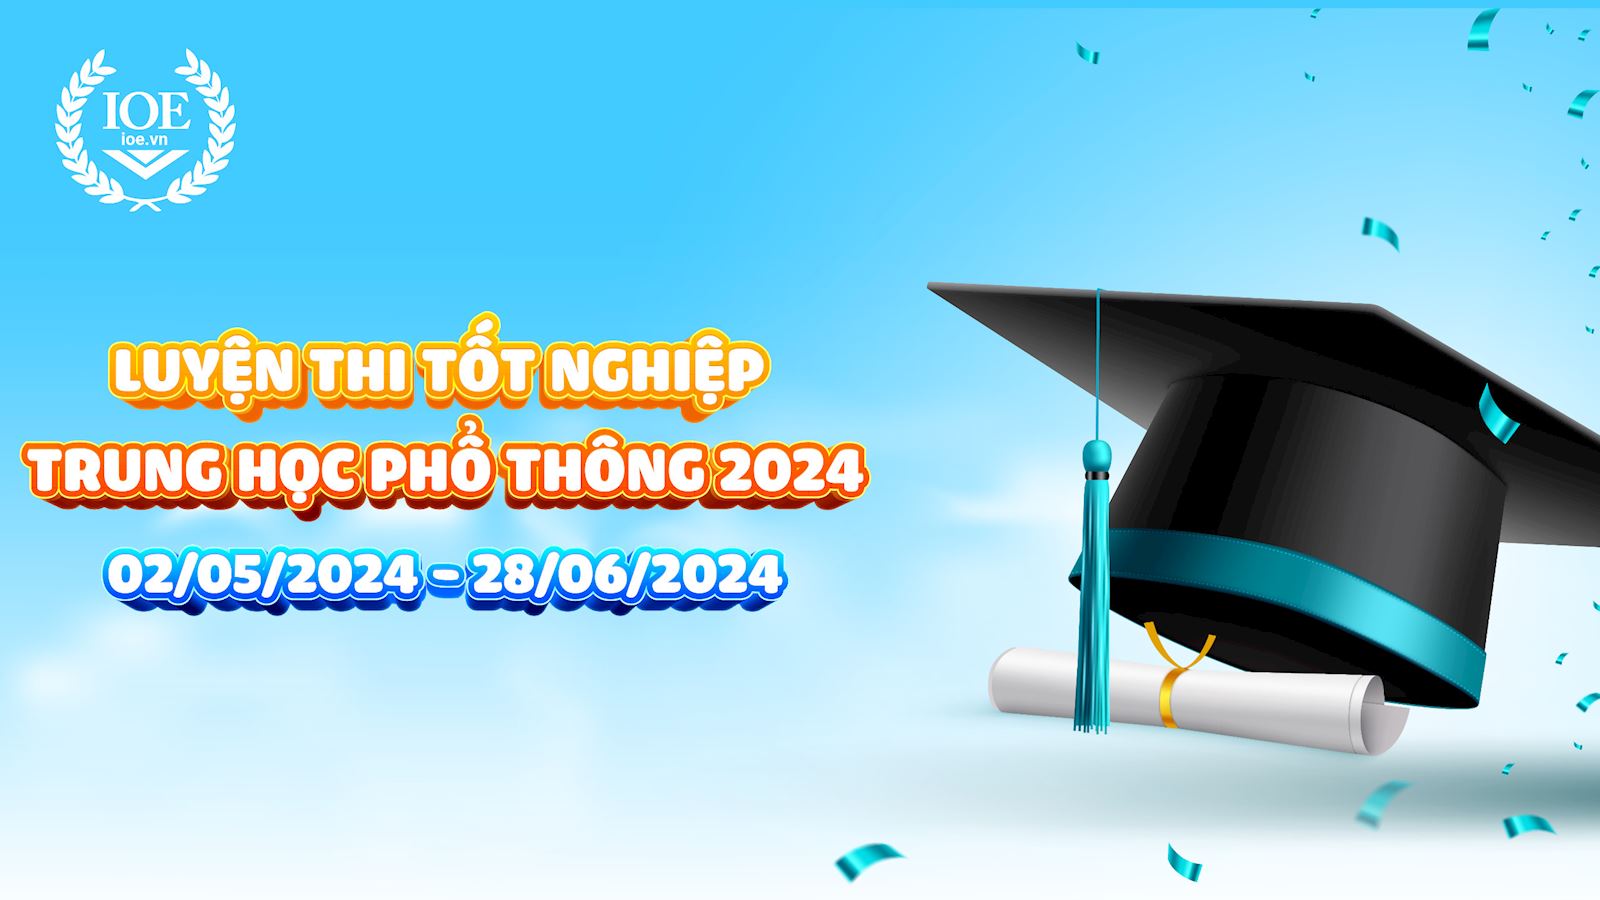 IOE đồng hành cùng Kỳ thi tốt nghiệp THPT năm 2024